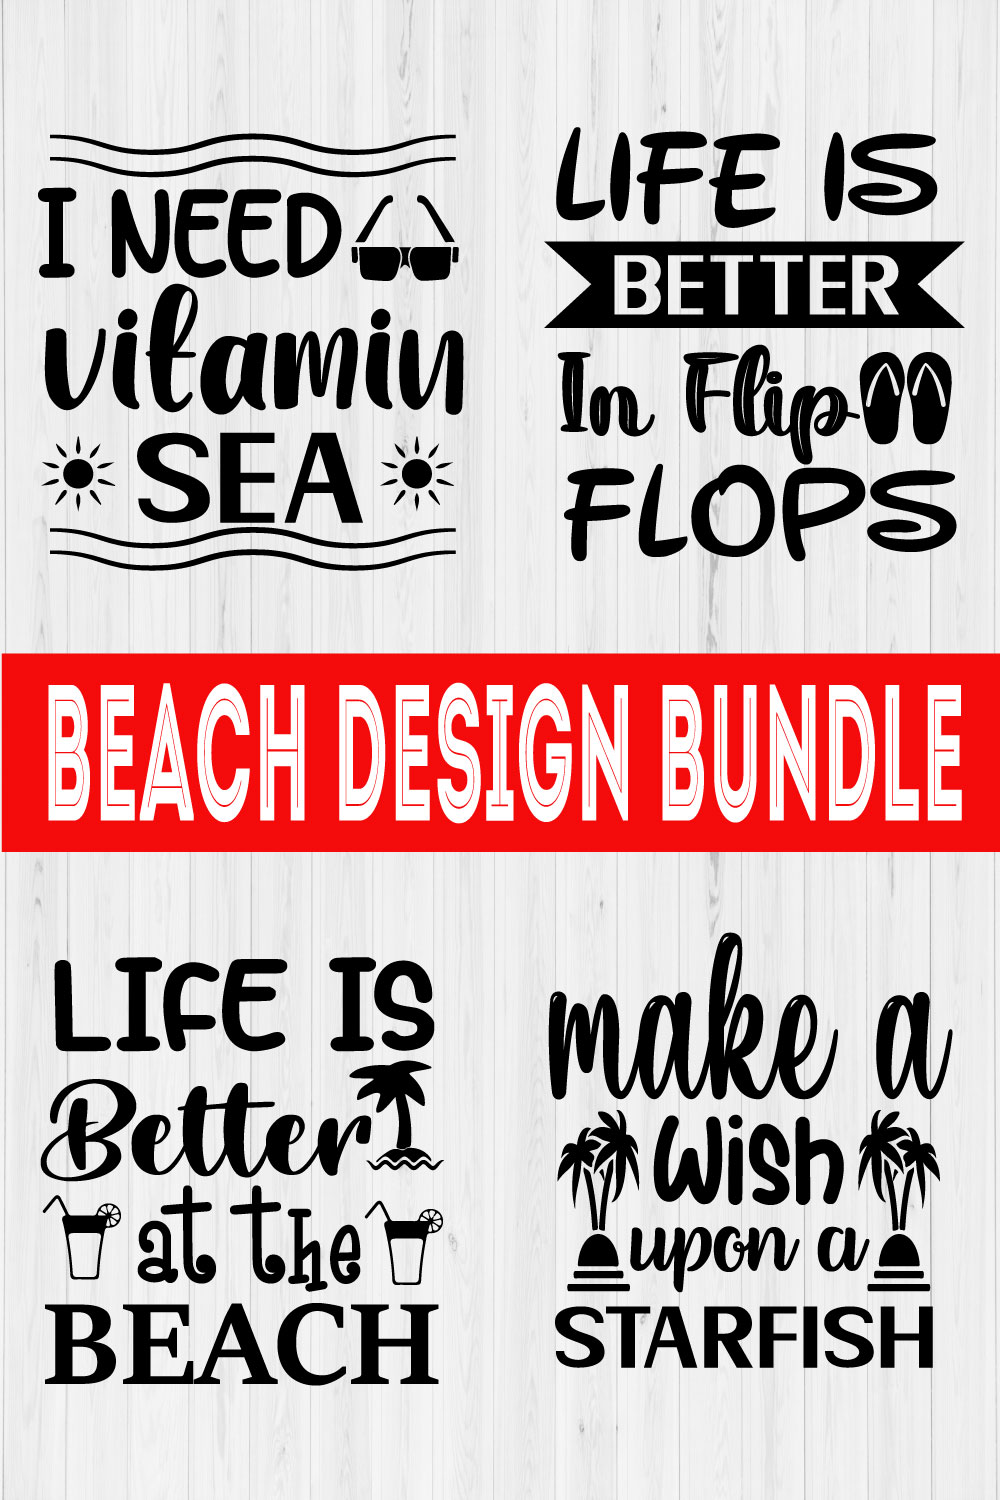 Beach Design Bundle Vol3 pinterest preview image.